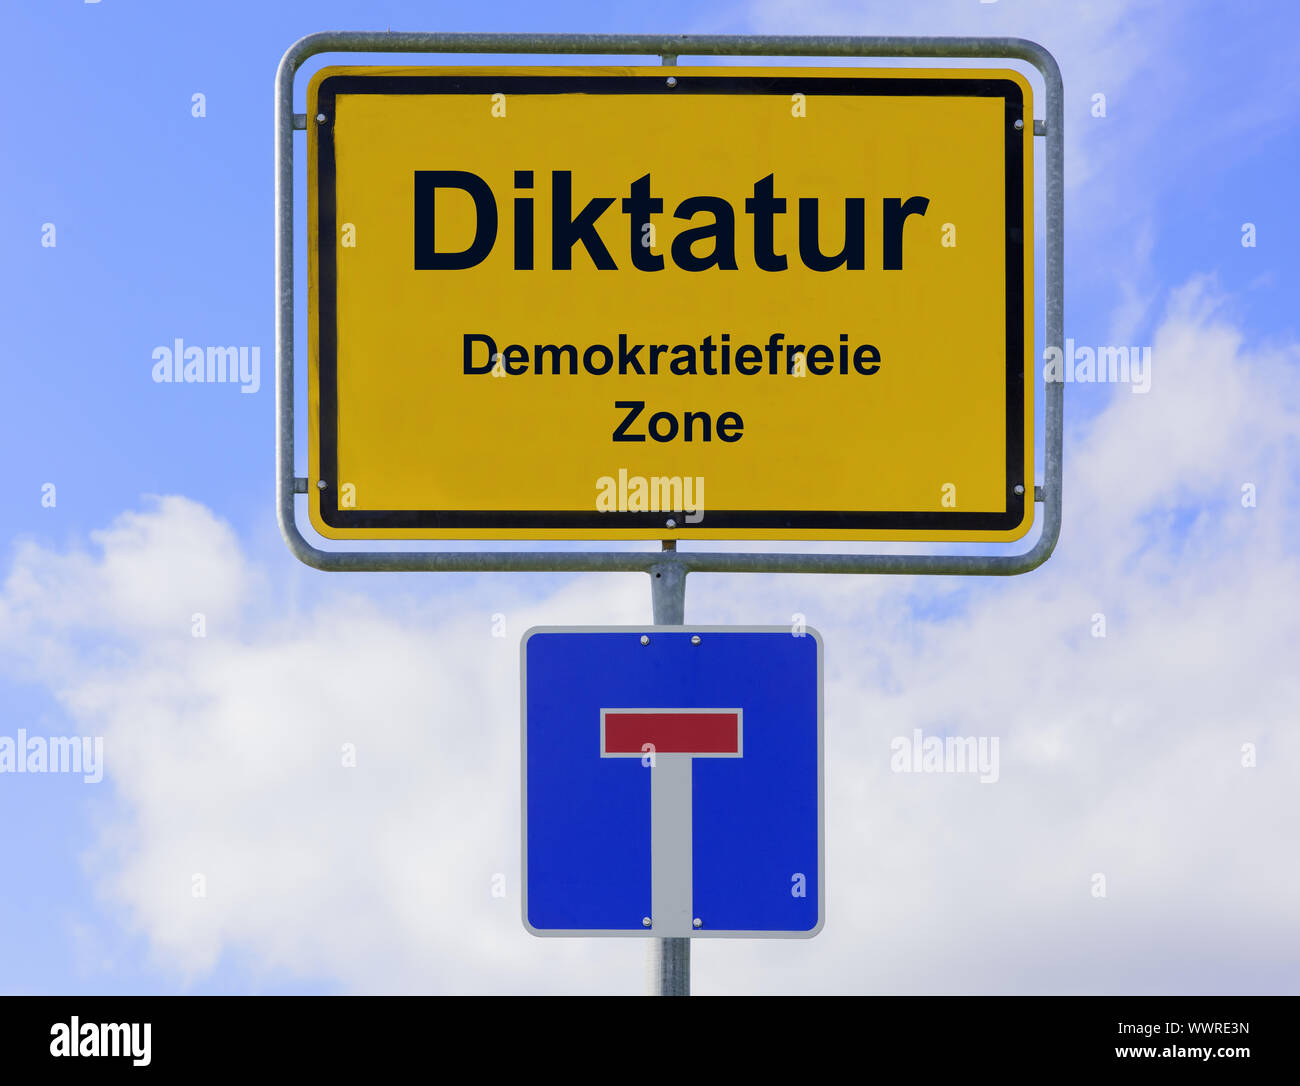 Diktatur in der Demokratie-freie Zone Stockfoto